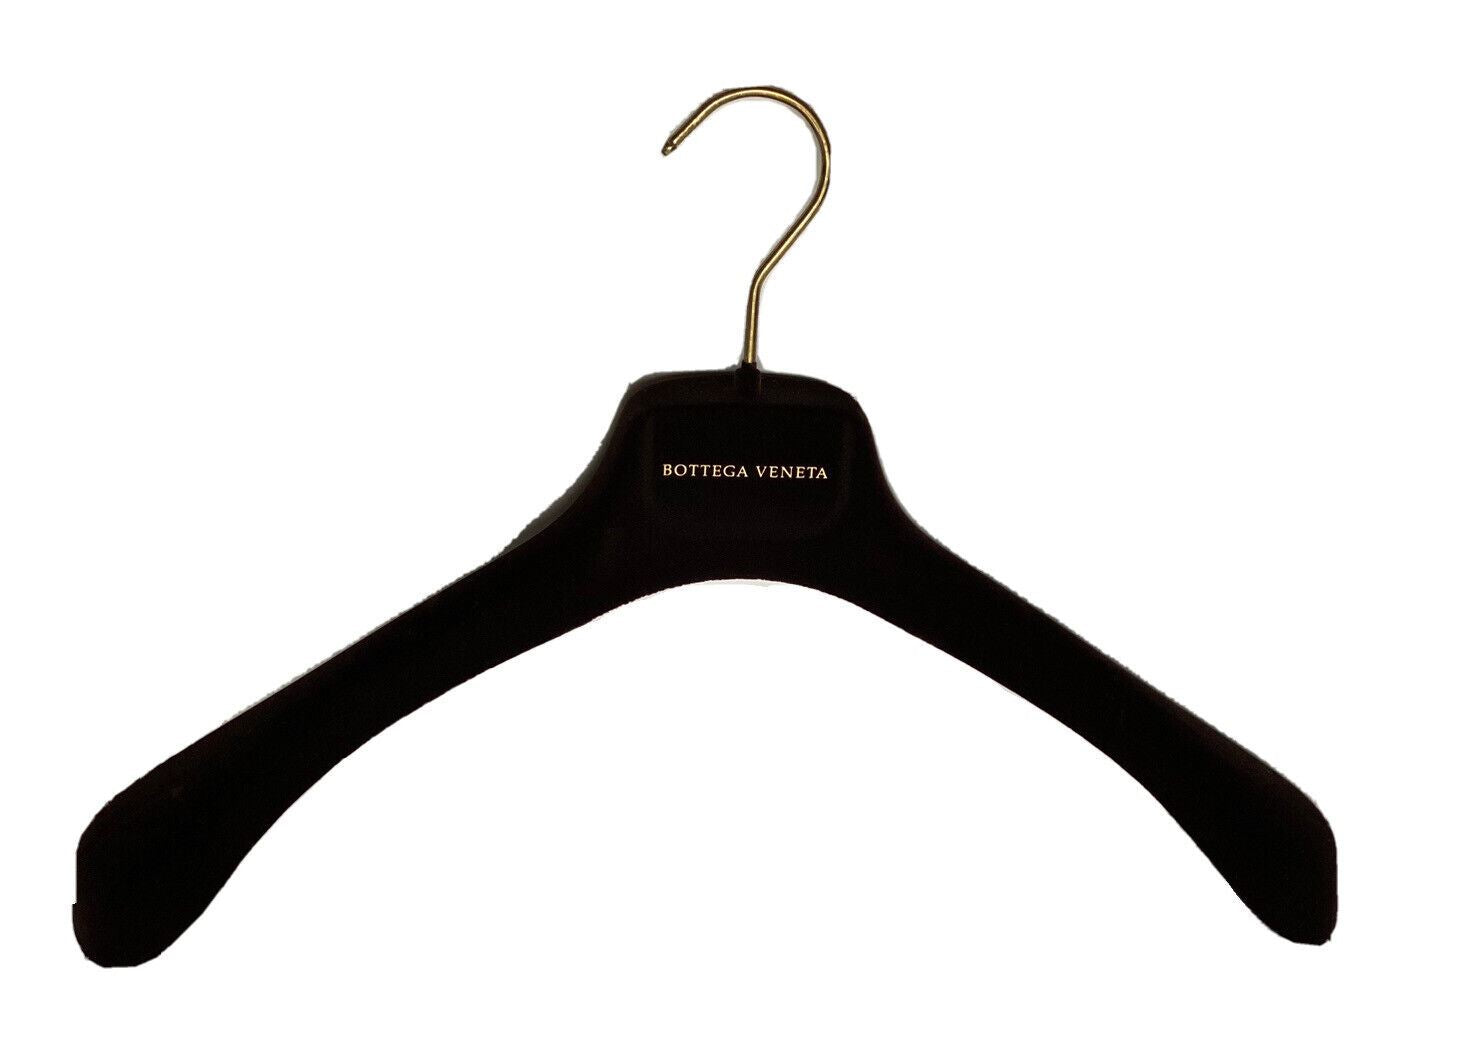 Bottega Veneta Braune Samt-Blazer-Pullover-Kleiderbügel mit goldenen Beschlägen, 15,6 x 7 x 2,5 